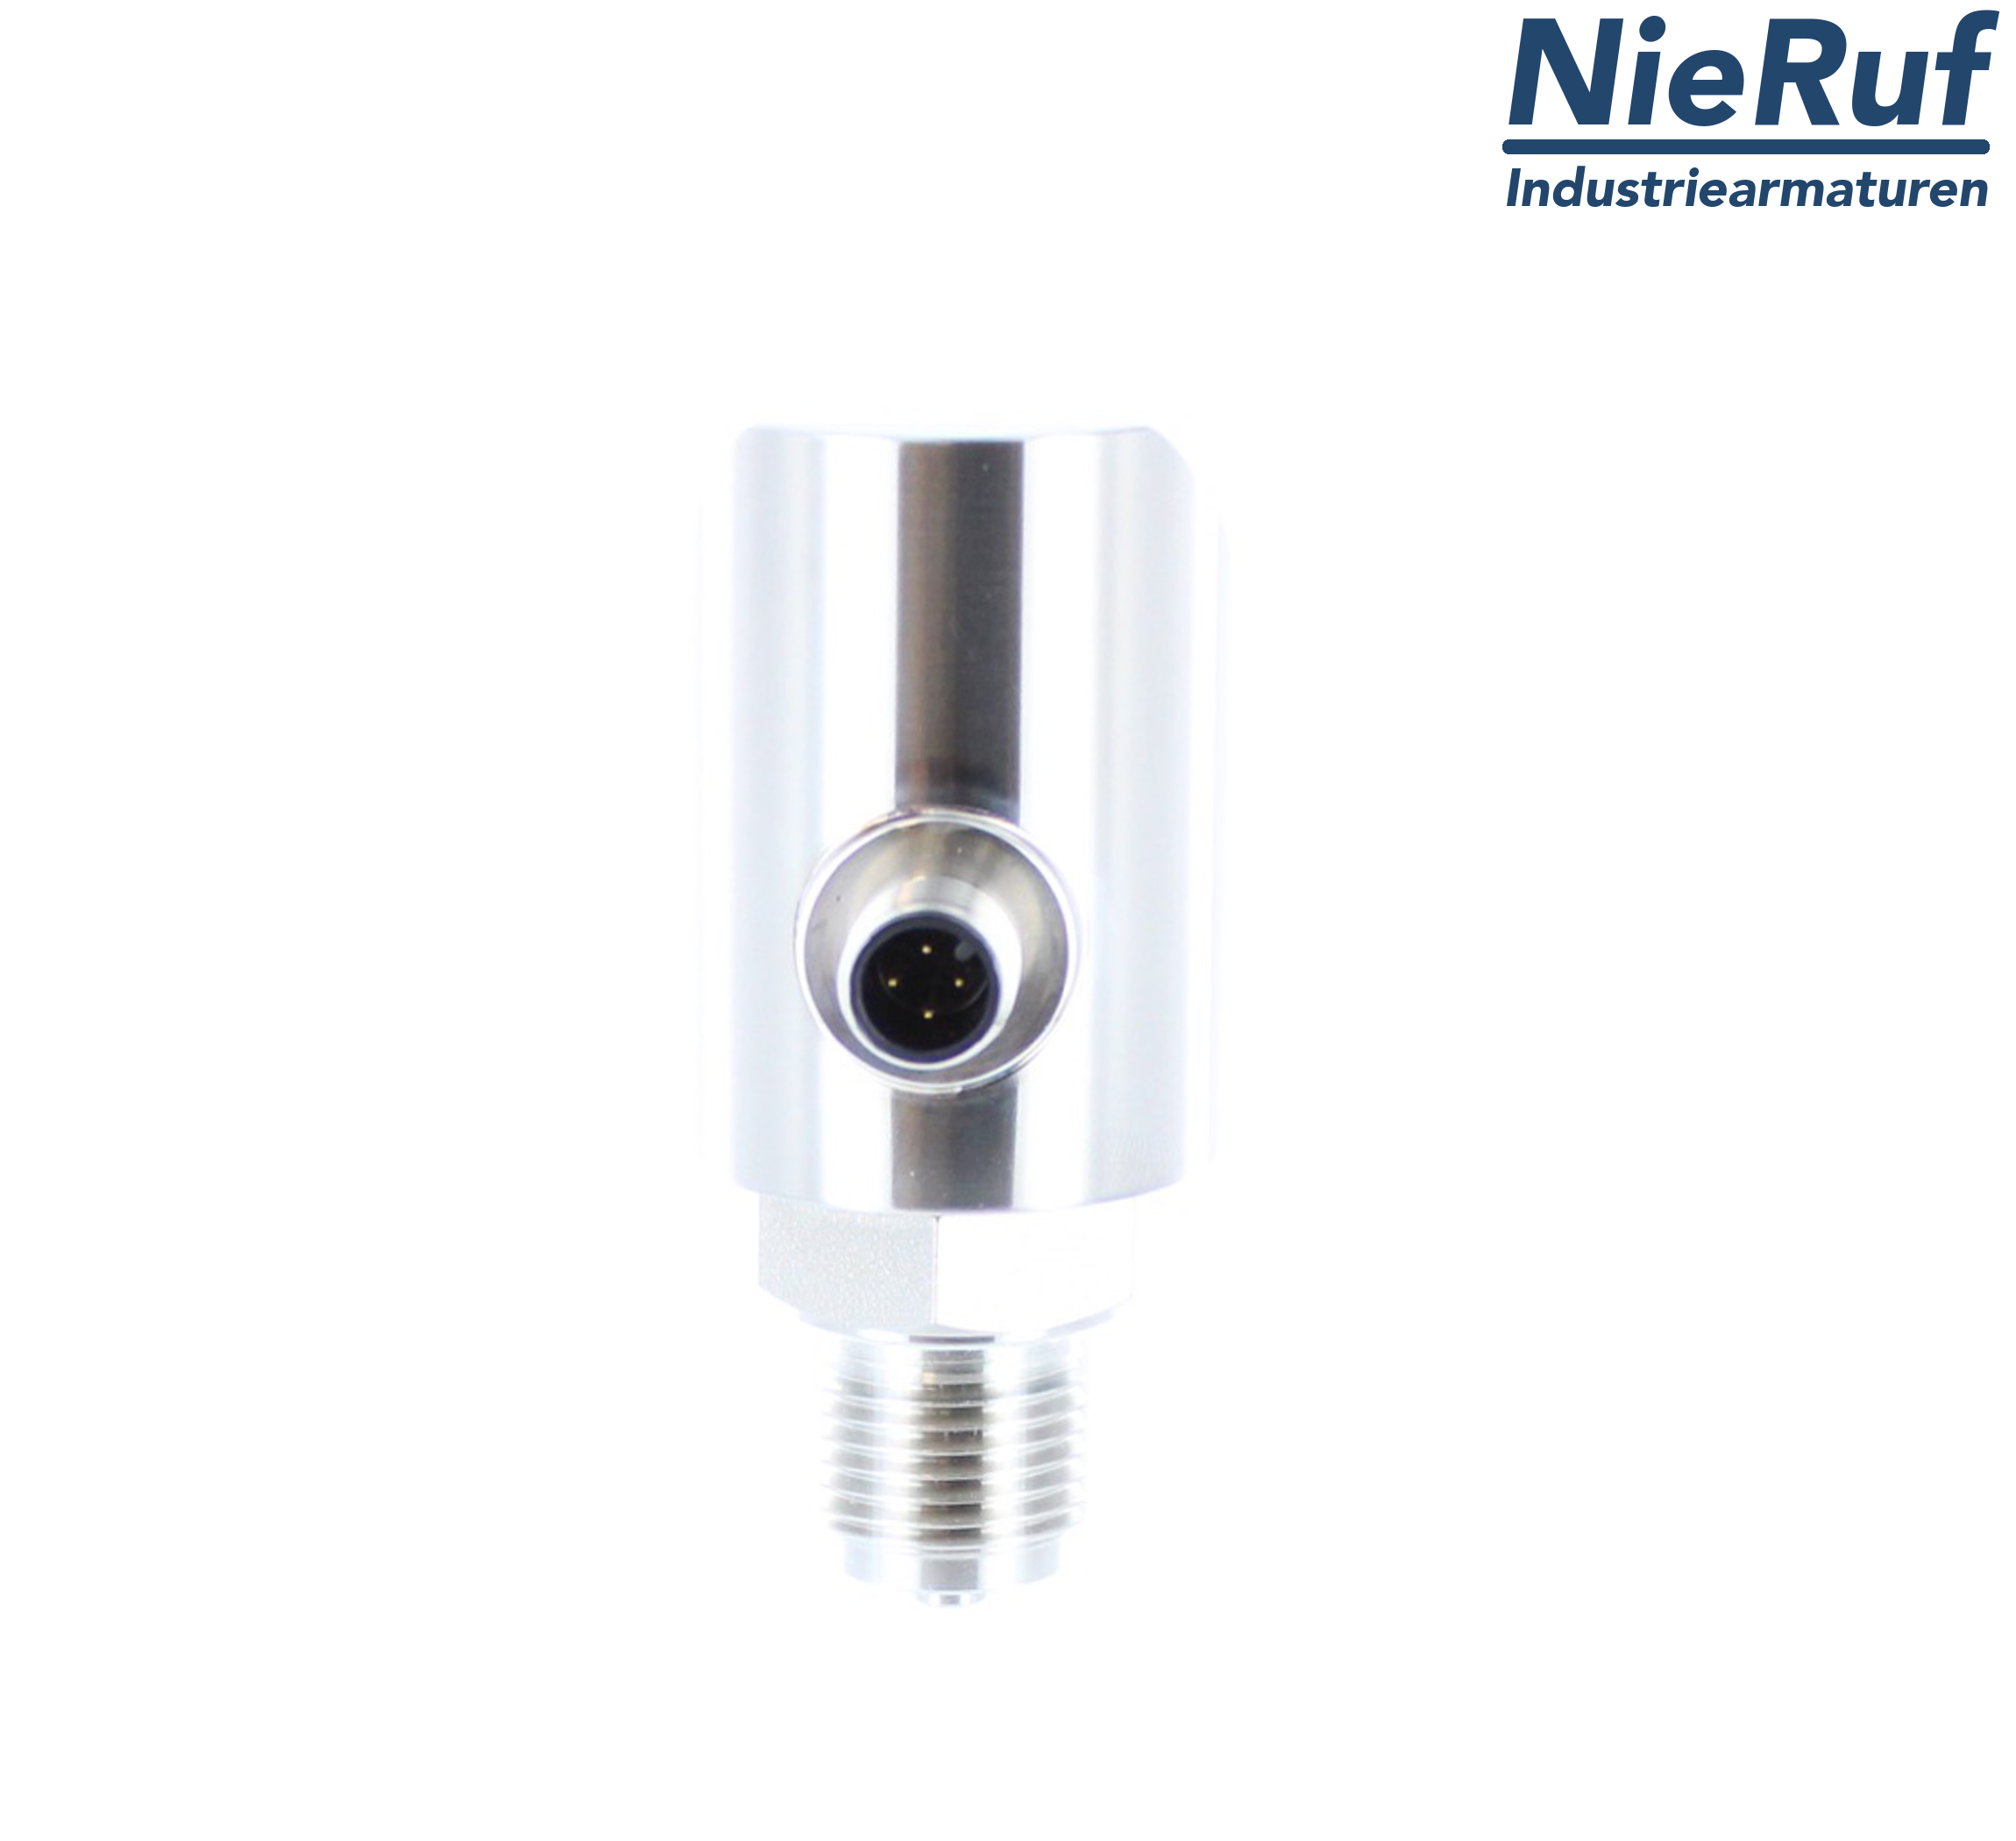 digital pressure sensor G 1/4" B 5-wire: 2xPNP, 1x4 - 20mA FPM 0,0 - 0,60 bar